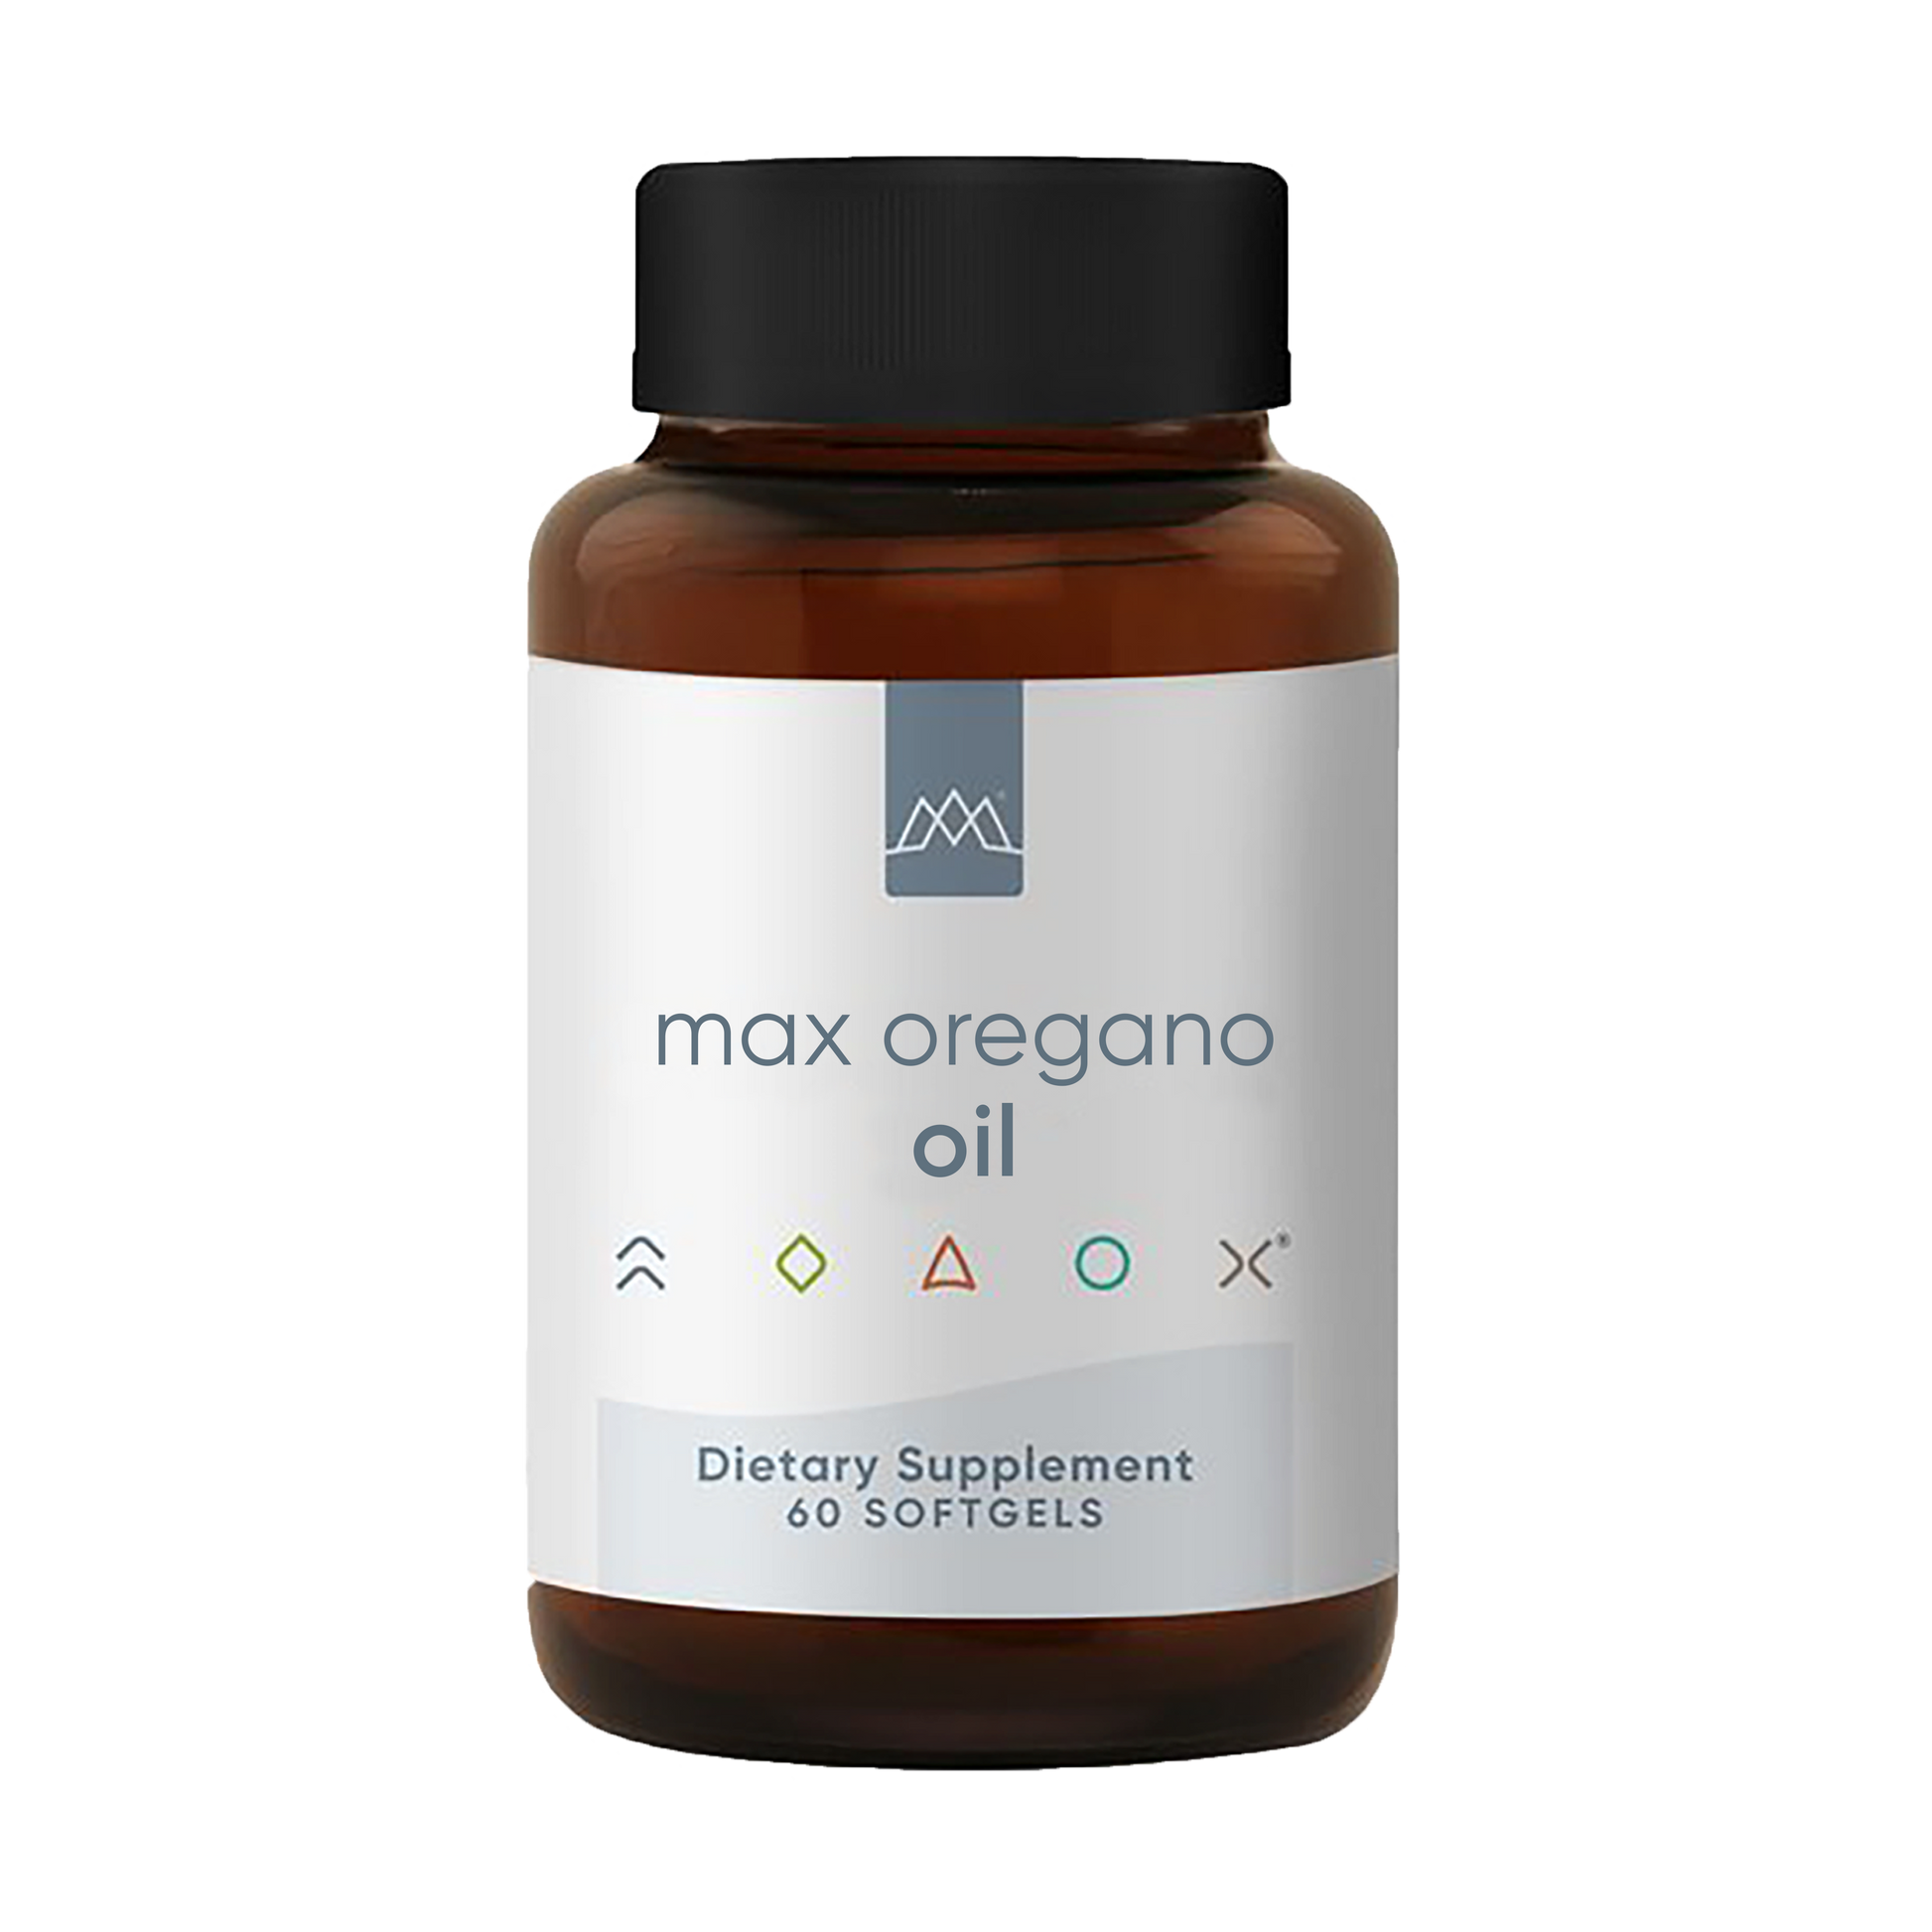 Max Oregano Oil